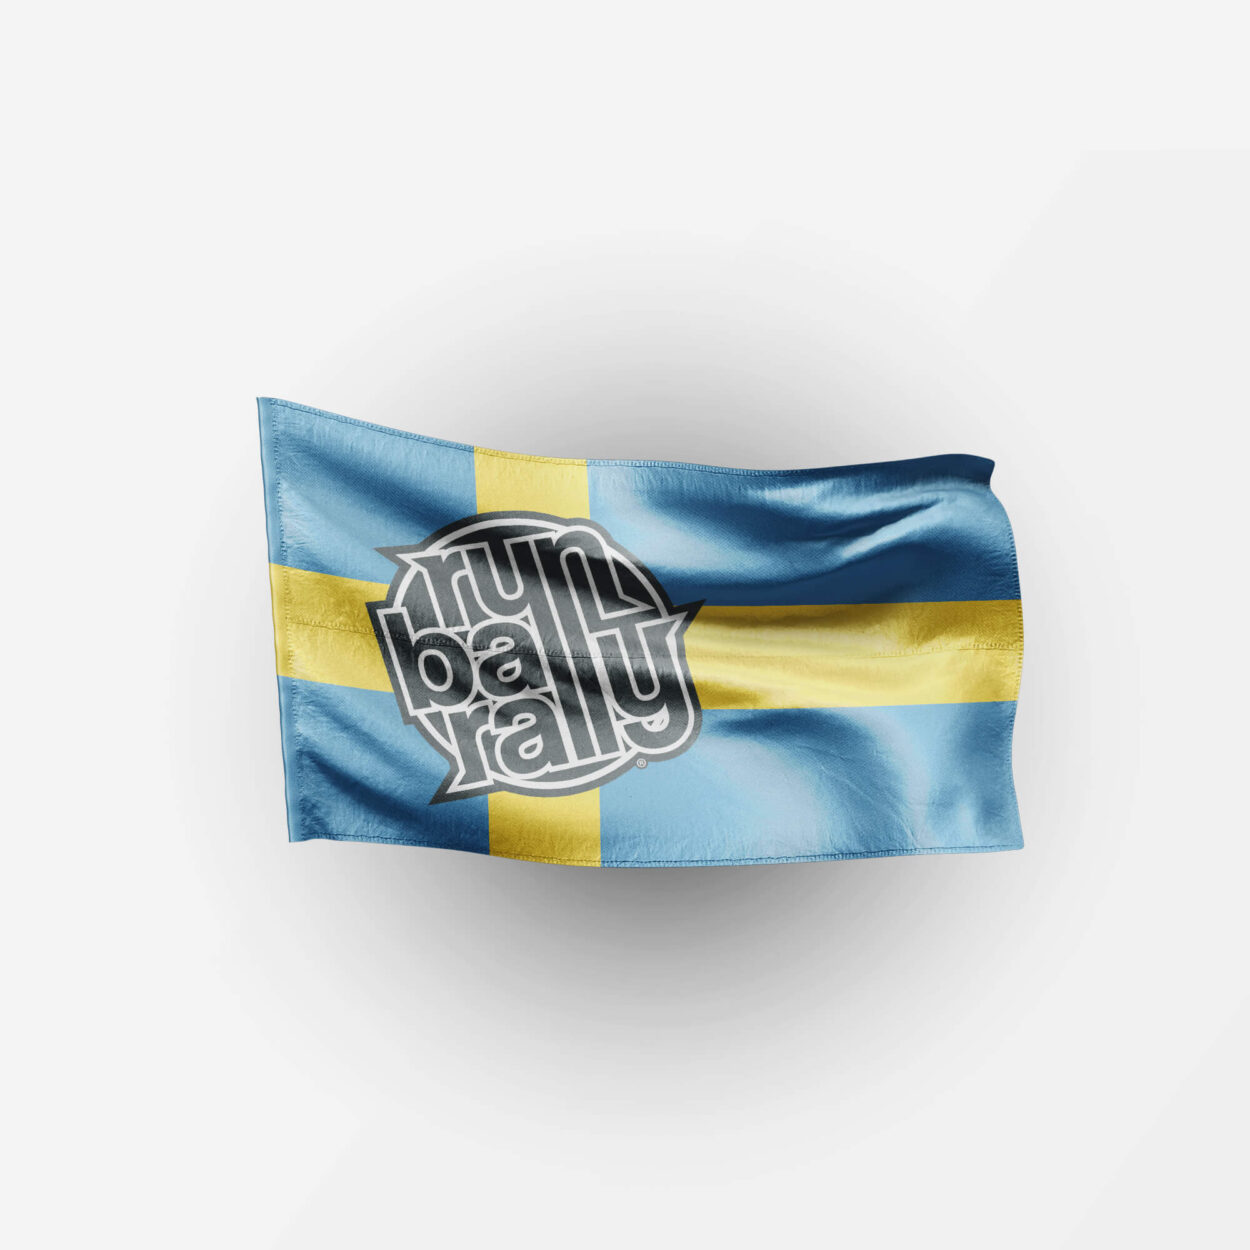 Runball Sverige flagga